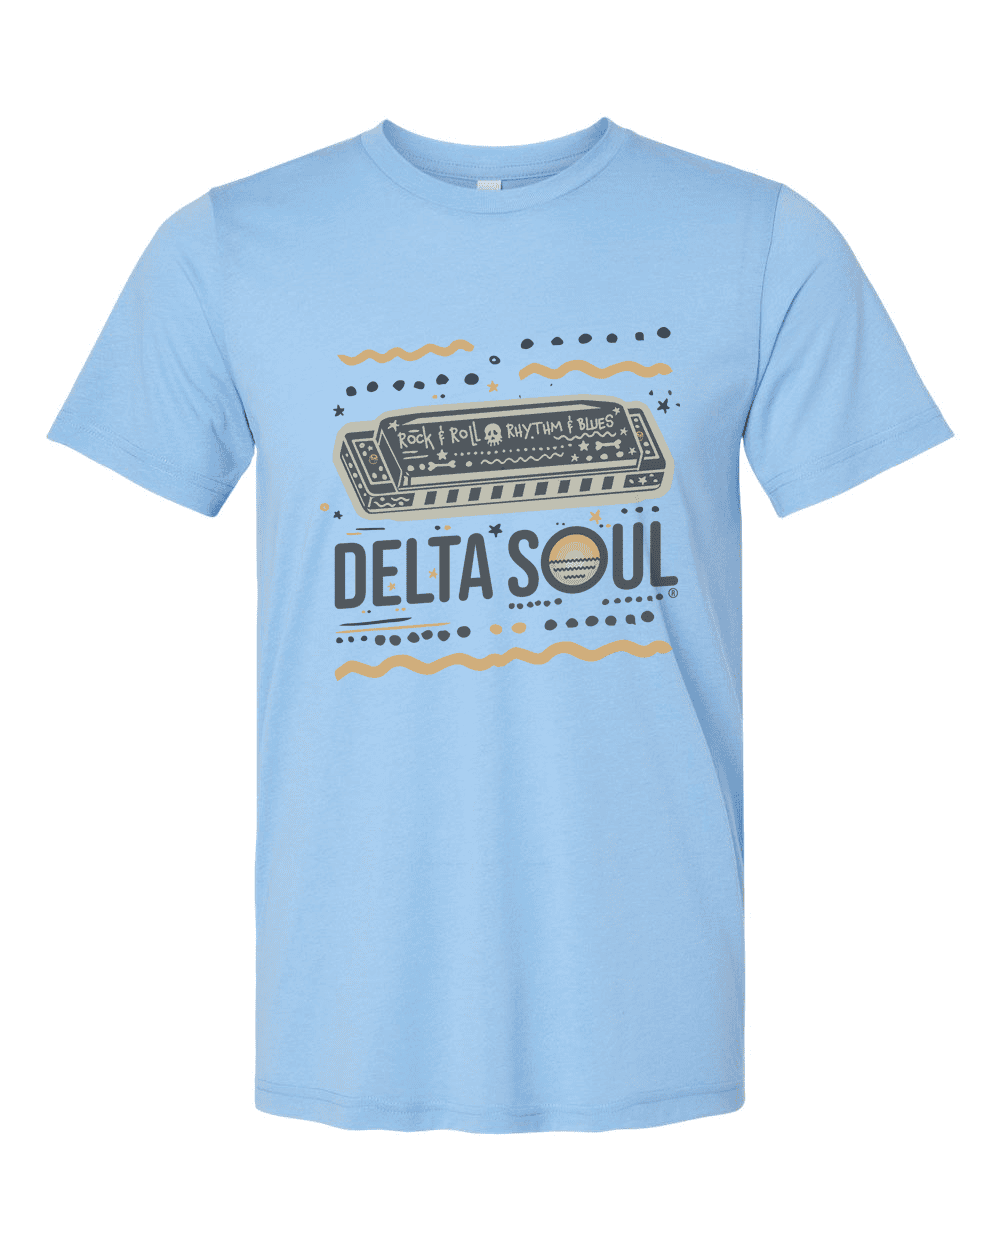 Delta Soul - Harmonica